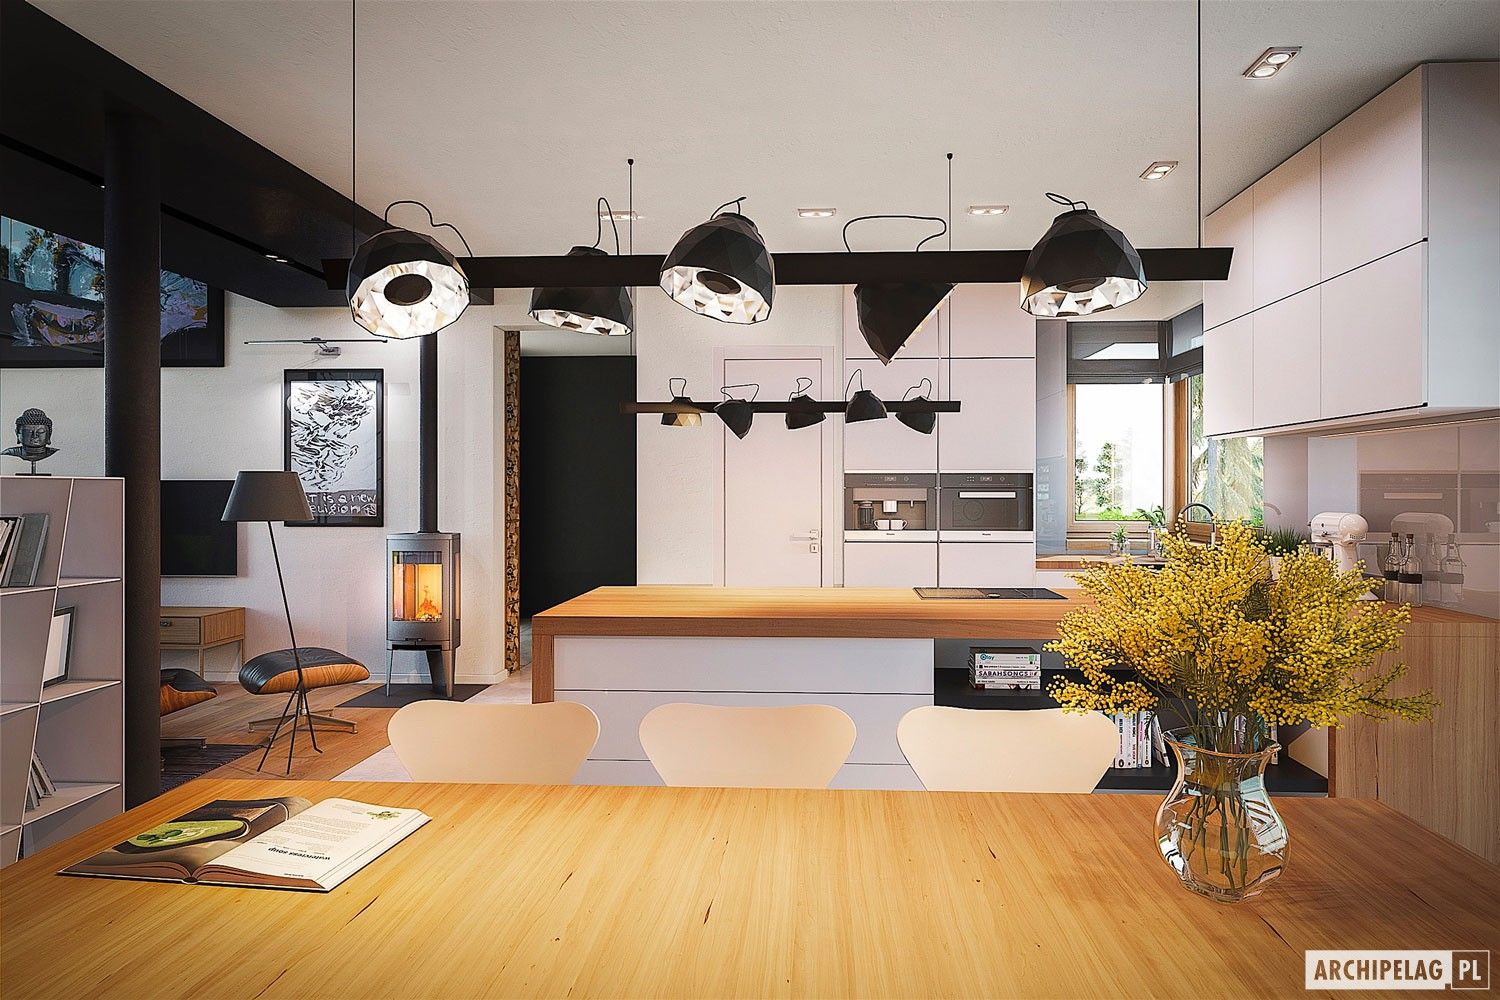 EX 18 G2 ENERGO PLUS - idealny dom dla miłośników minimalizmu! Pracownia Projektowa ARCHIPELAG Nowoczesna kuchnia projekty domów,dom nowoczesny,dom energooszczędny